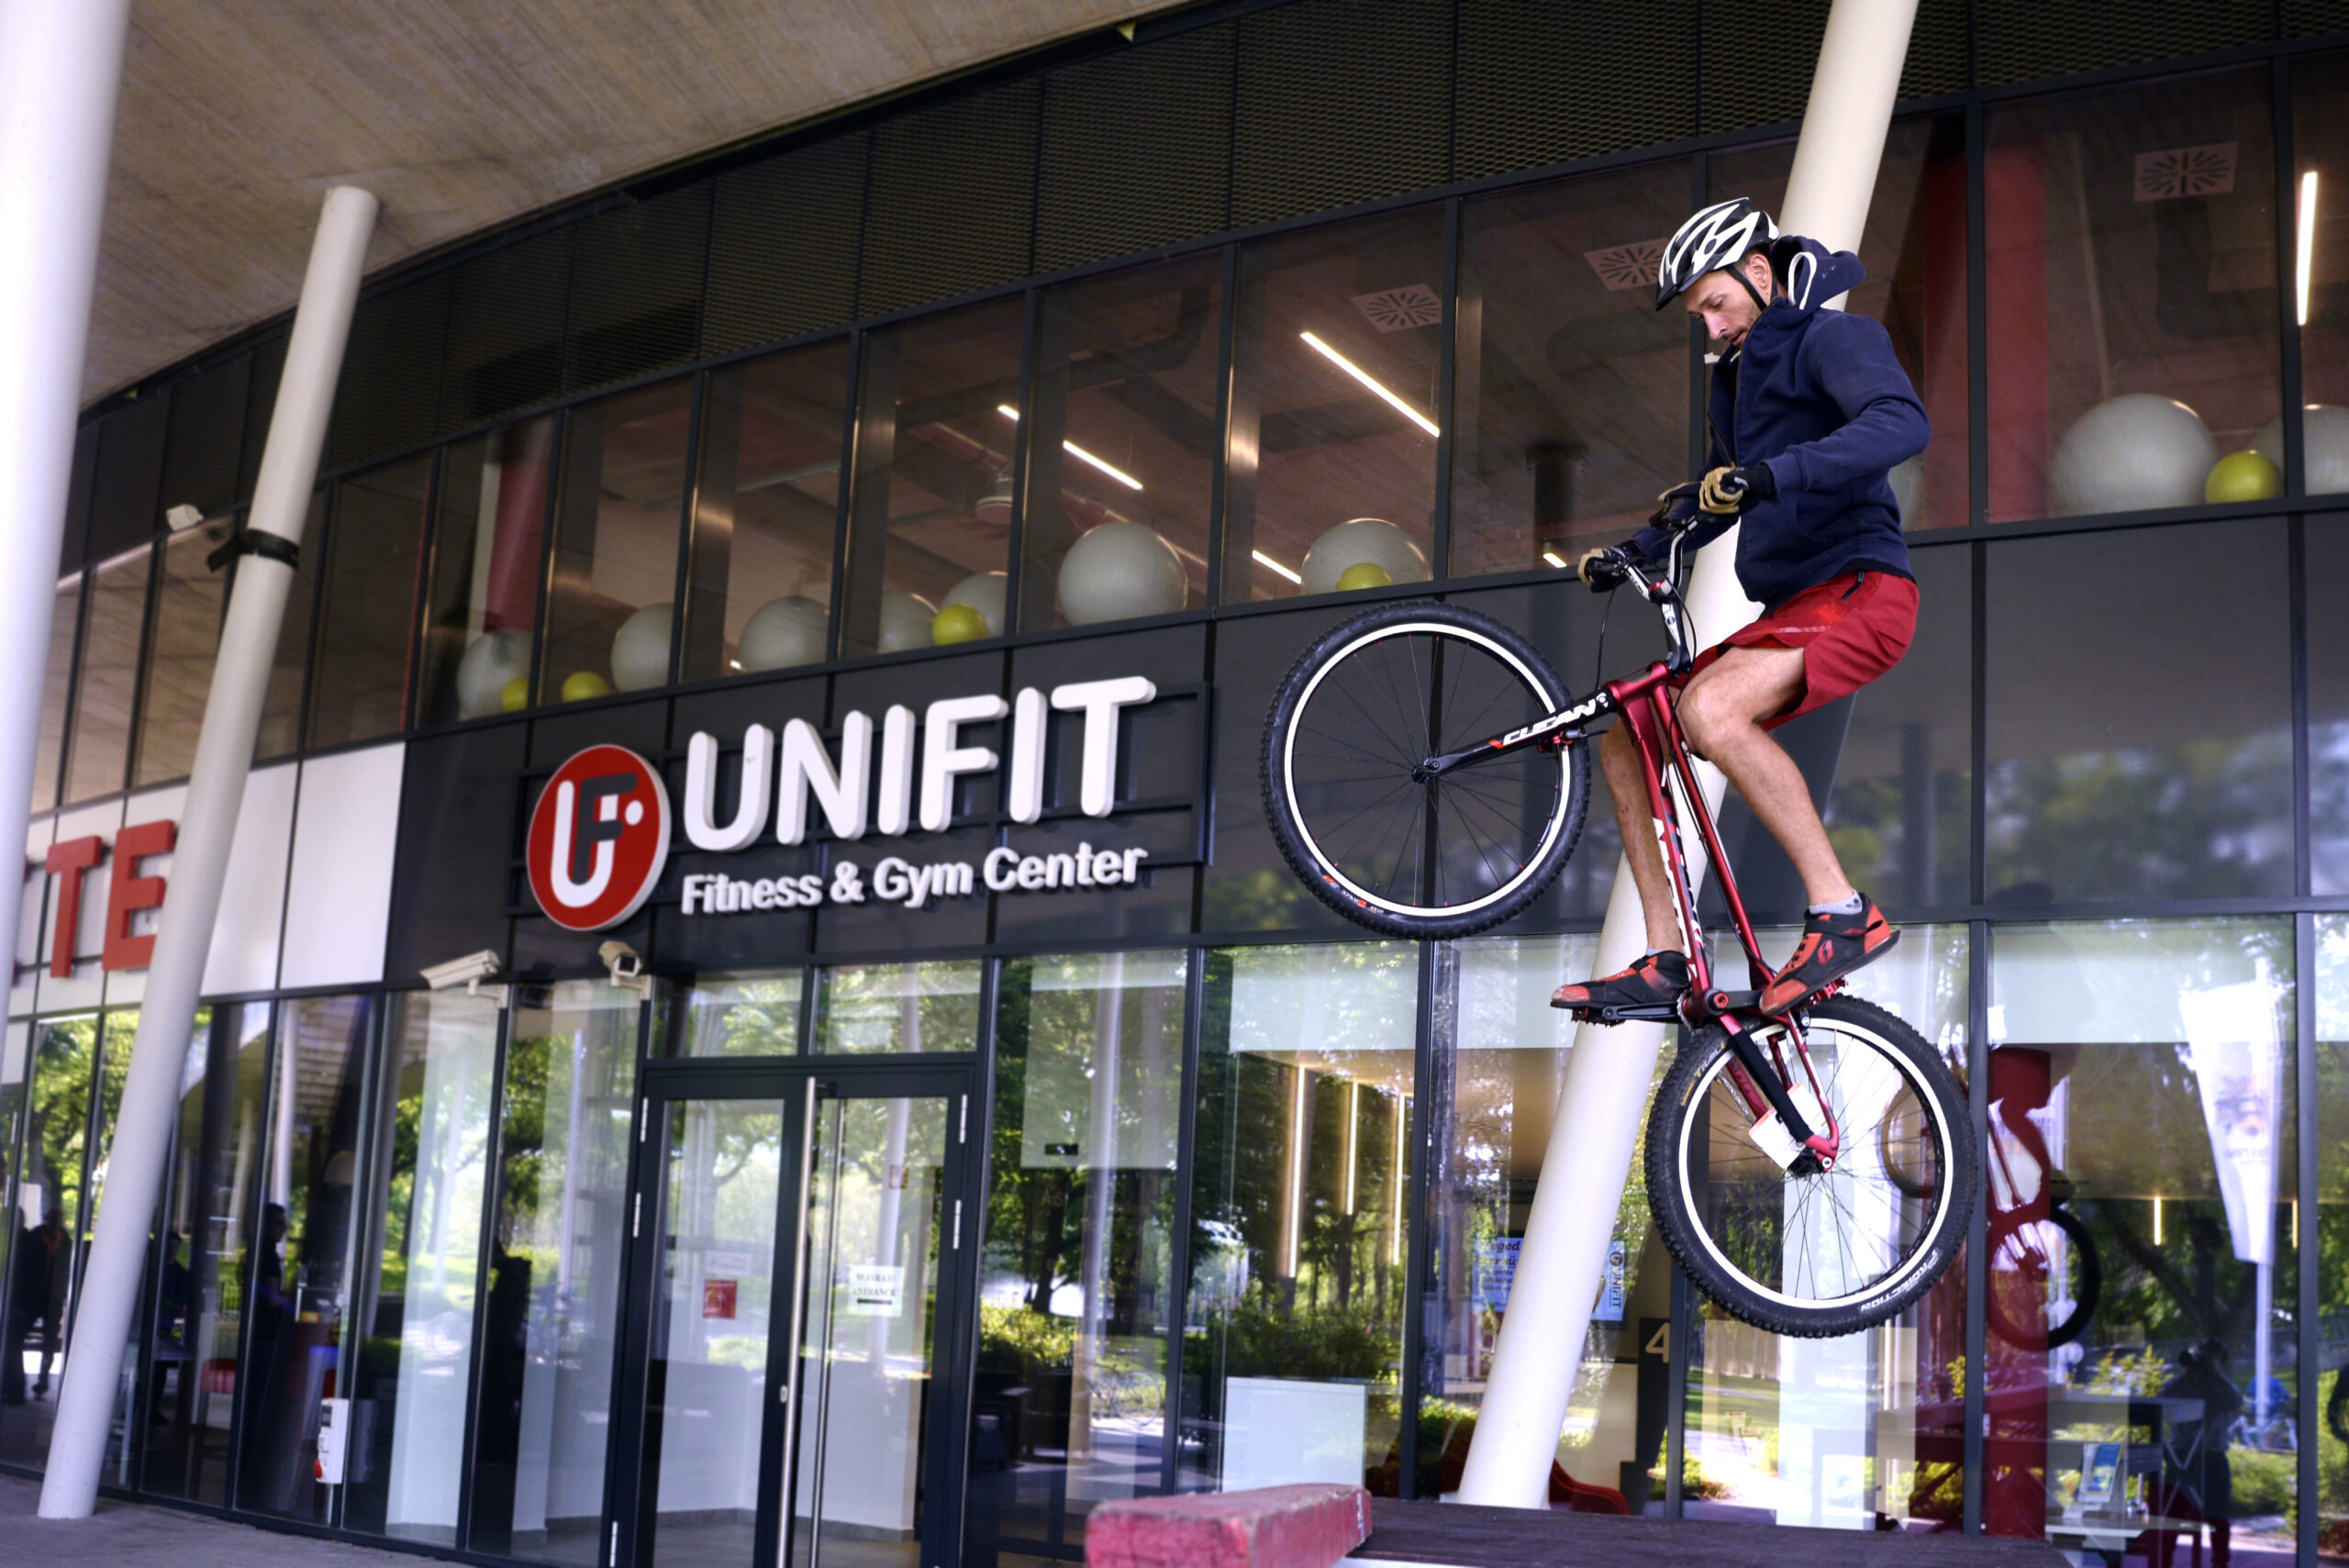 Debreceni Egyetem sportkomplexuma előtt egy biciklis a levegőben van egy ugrás közben.